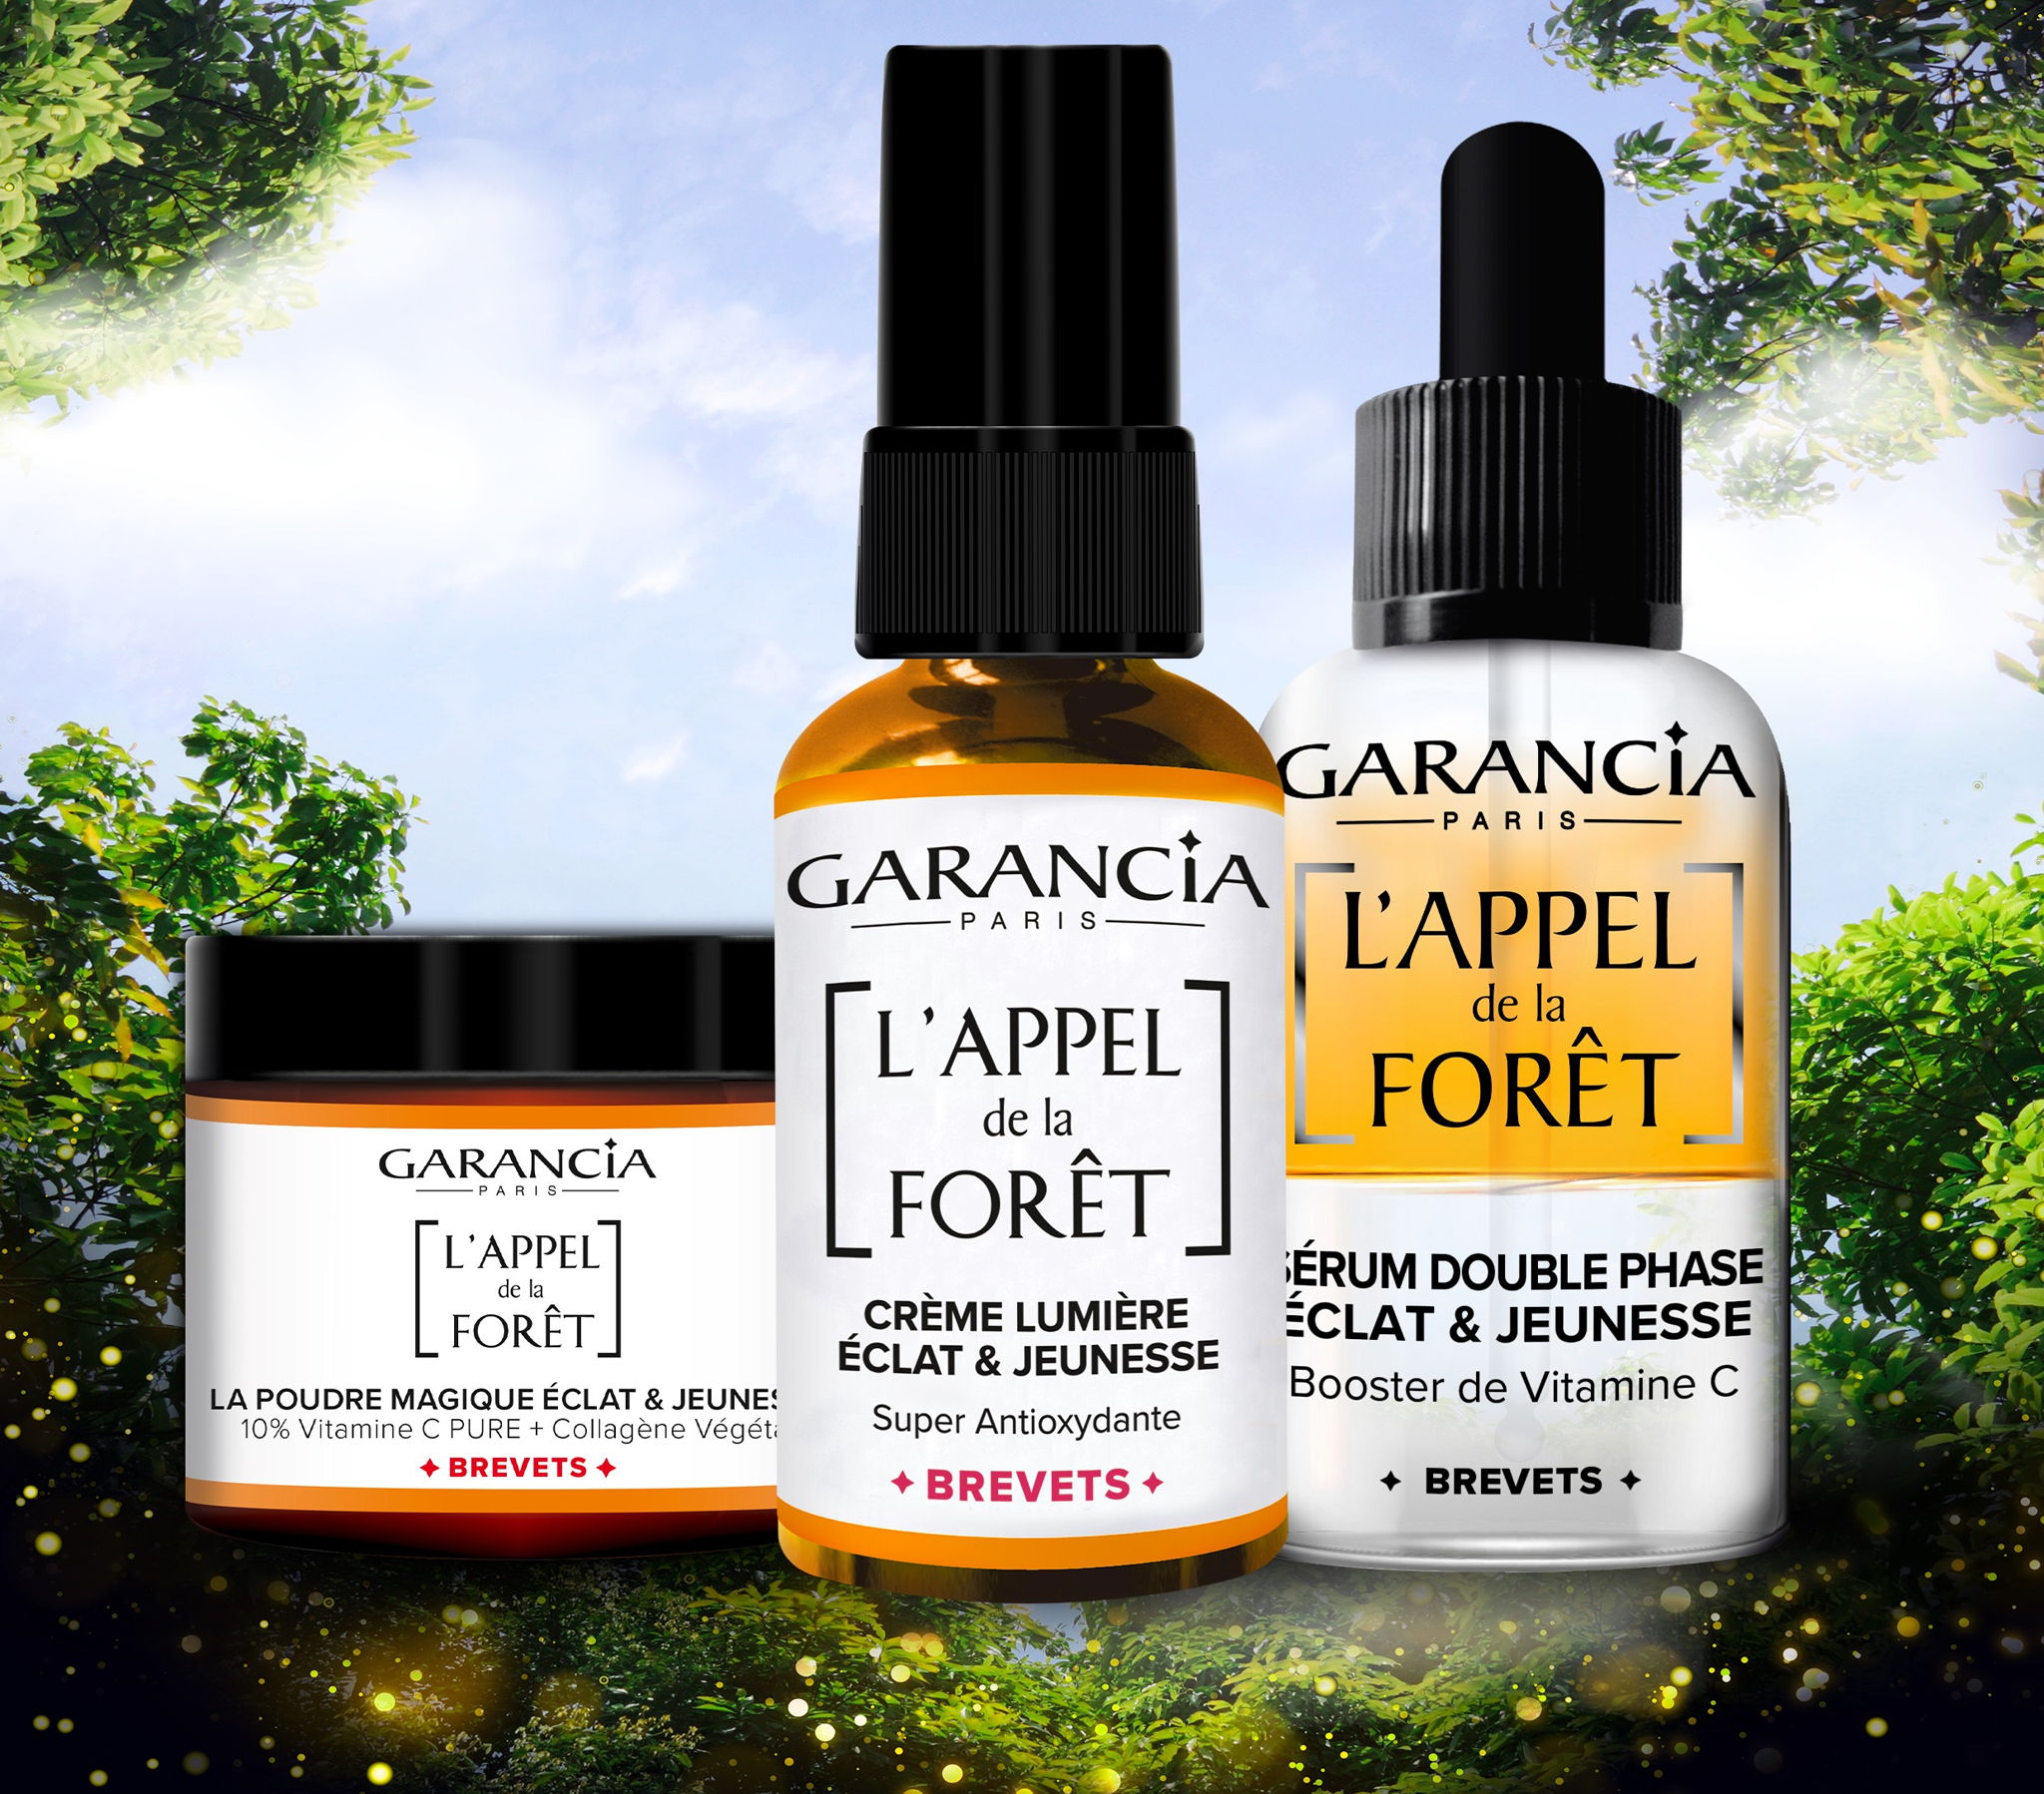 Retrouvez une peau saine, jeune et éclatante grâce à la gamme l’Appel de la Forêt de Garancia !